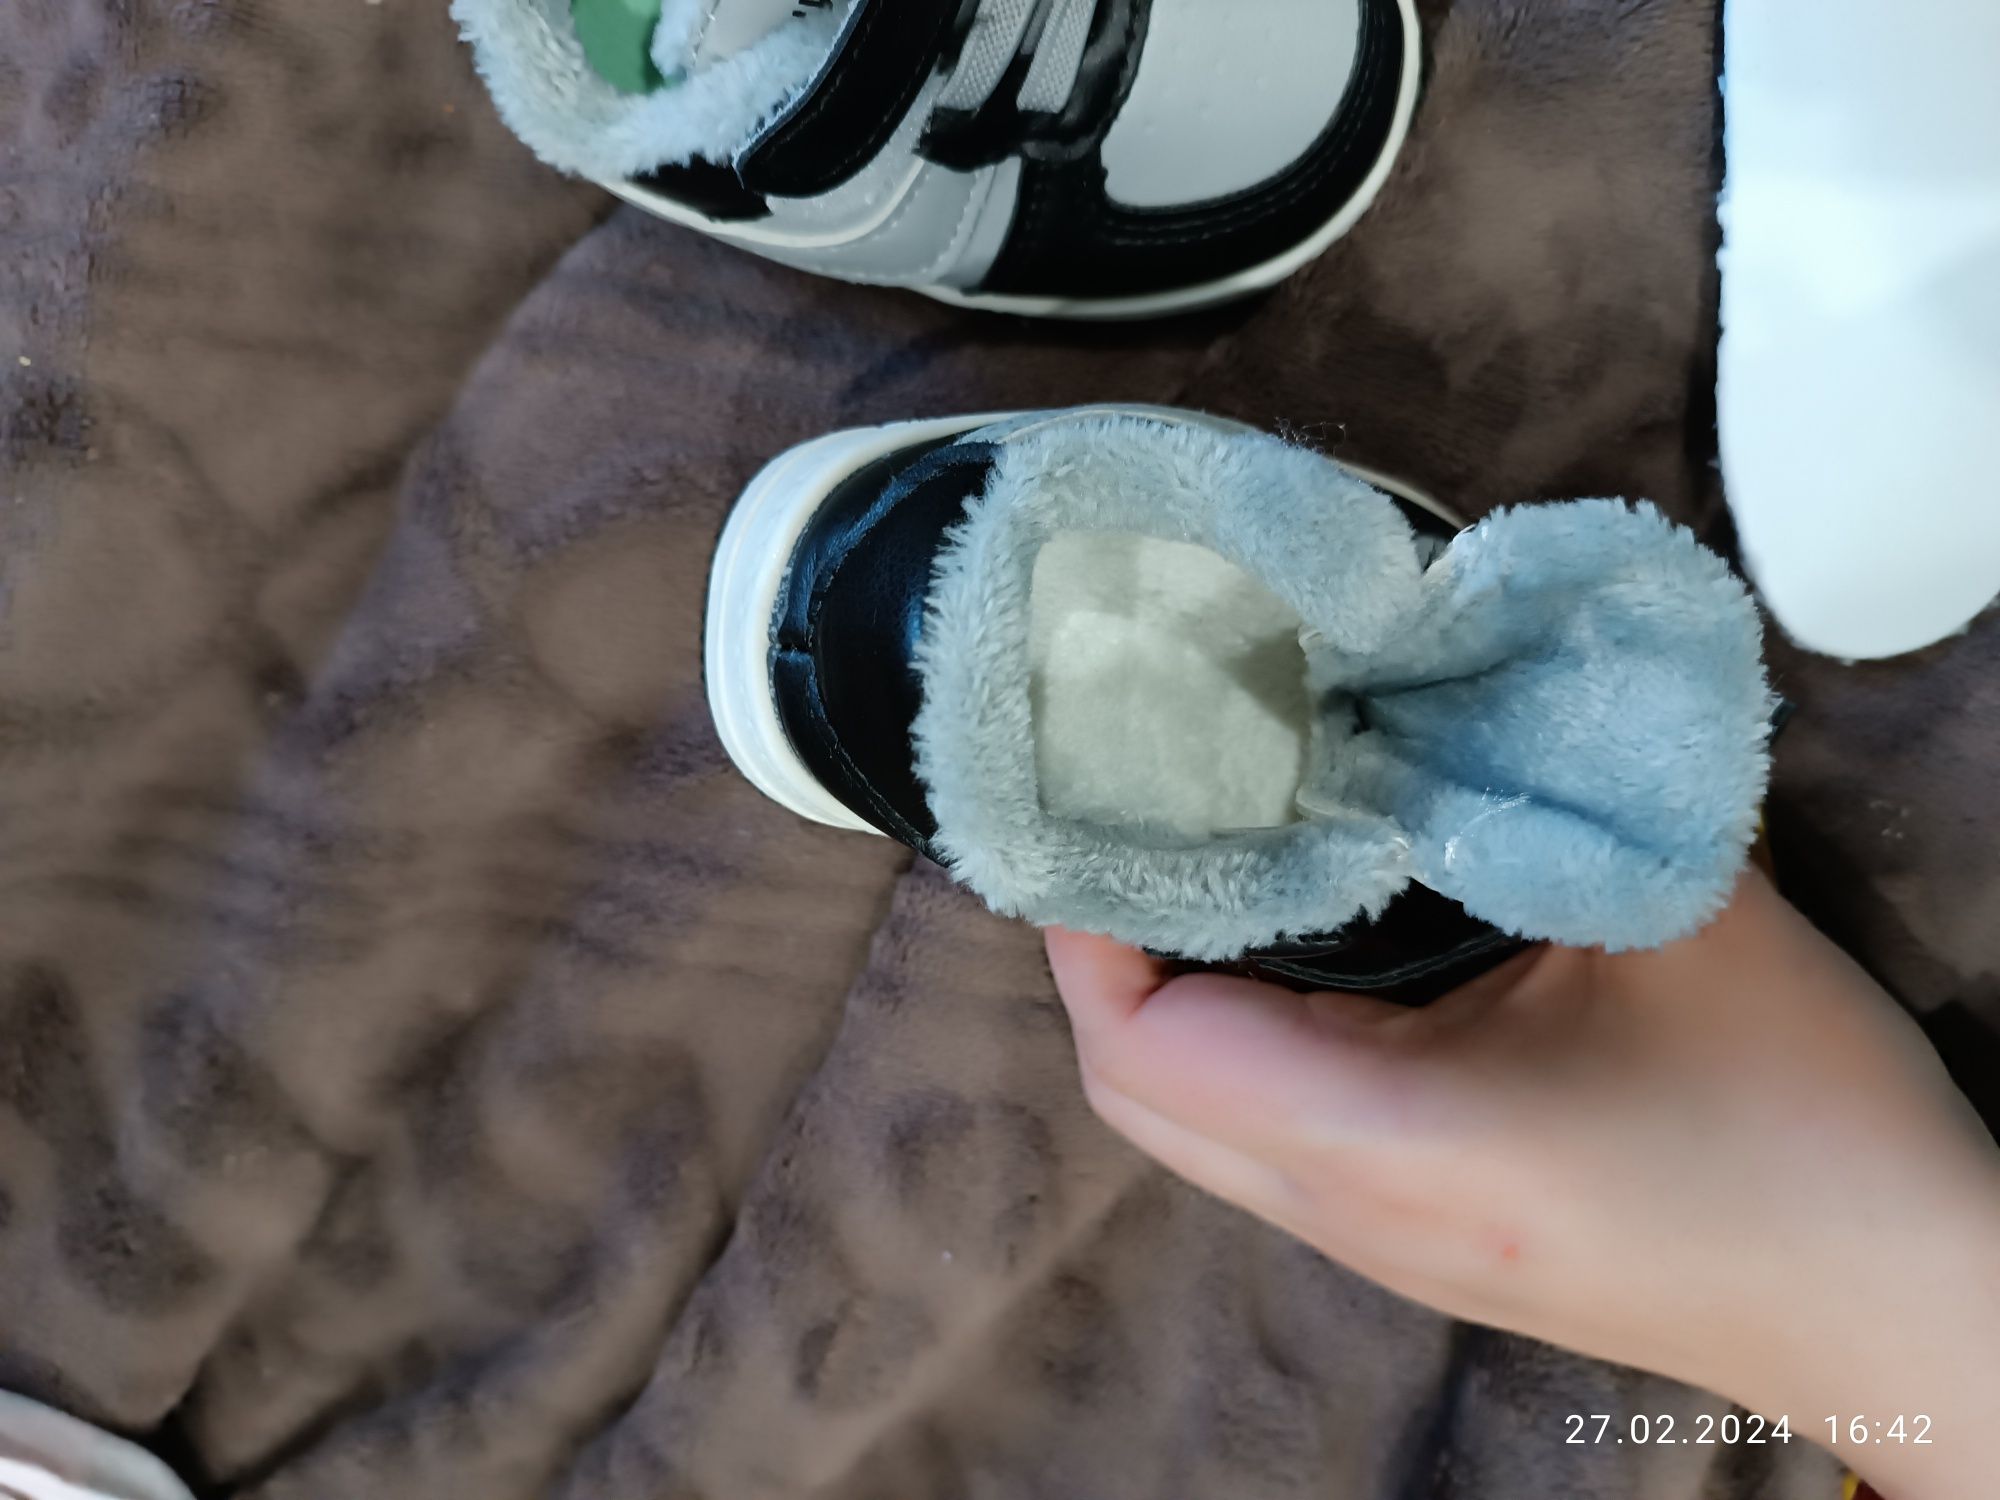 Кросівки зимові дитячі Nike 16 розмір
Довжина устілки 12 см
Стан новий